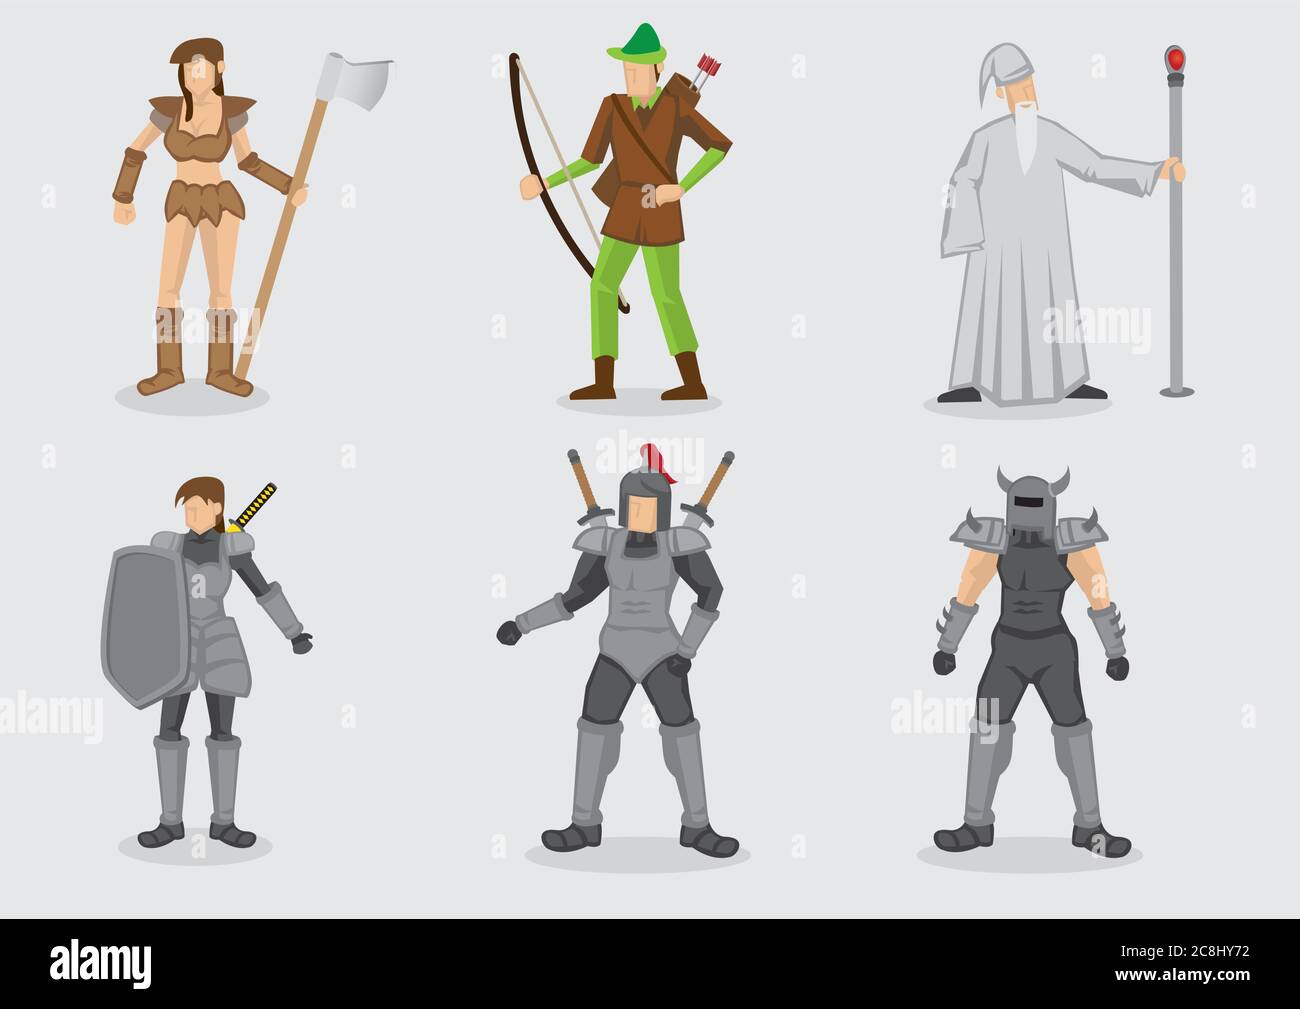 Vektor-Illustration von Cartoon-Charakter-Design und ihre Waffen für mittelalterliche Fantasy-Themen-Spiele auf schlichten Hintergrund isoliert. Stock Vektor